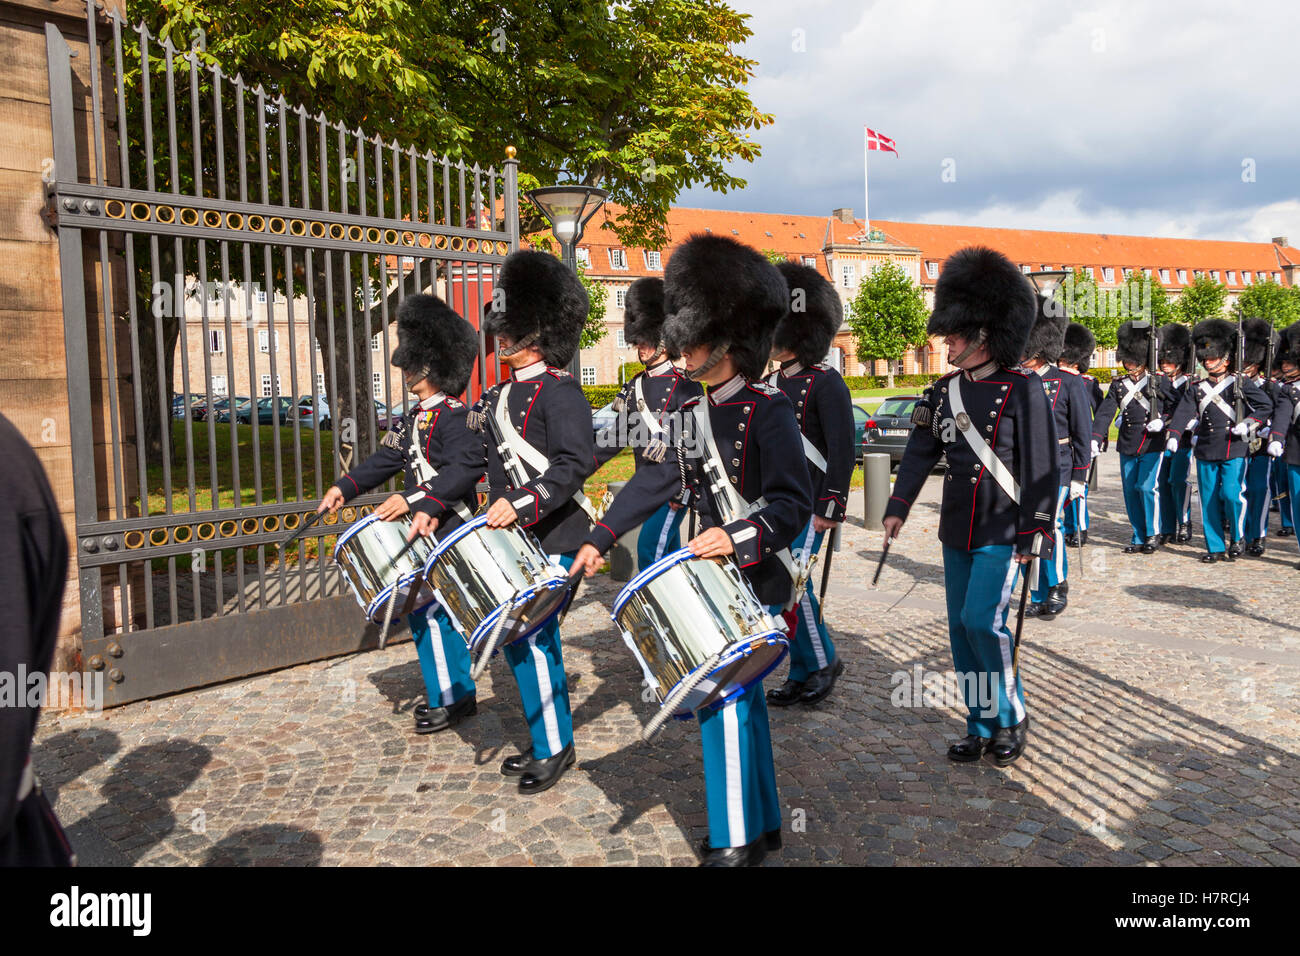 Marching band of soldiers leaving barracks at Rosenborg Castle, Copenhagen, Denmark Stock Photo